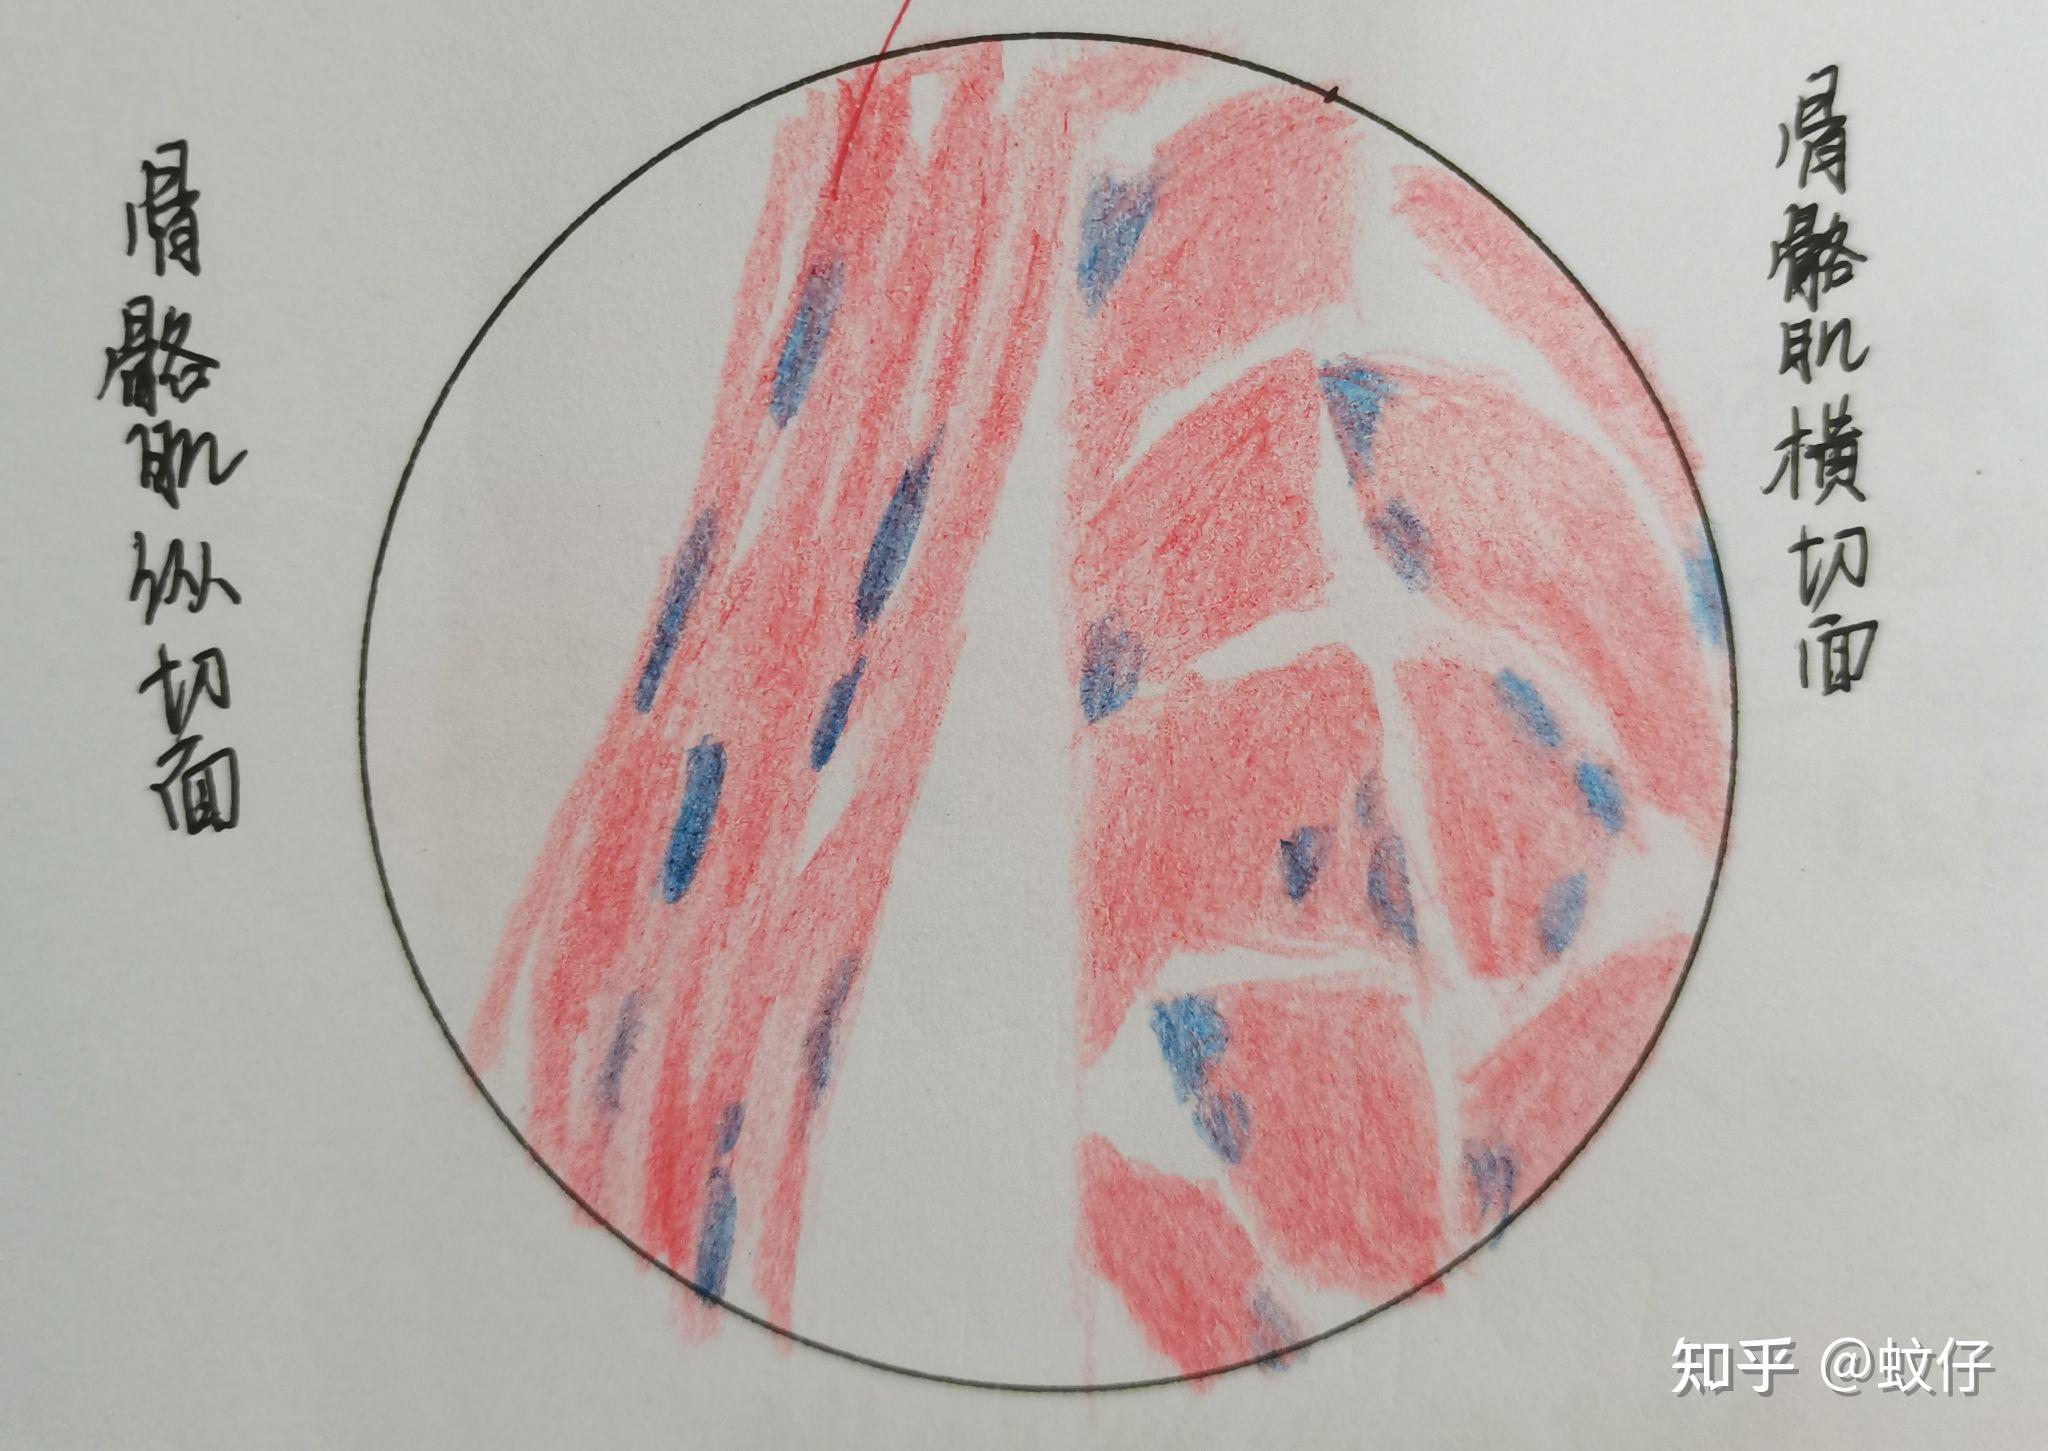 组织学与胚胎学红蓝铅笔绘图 